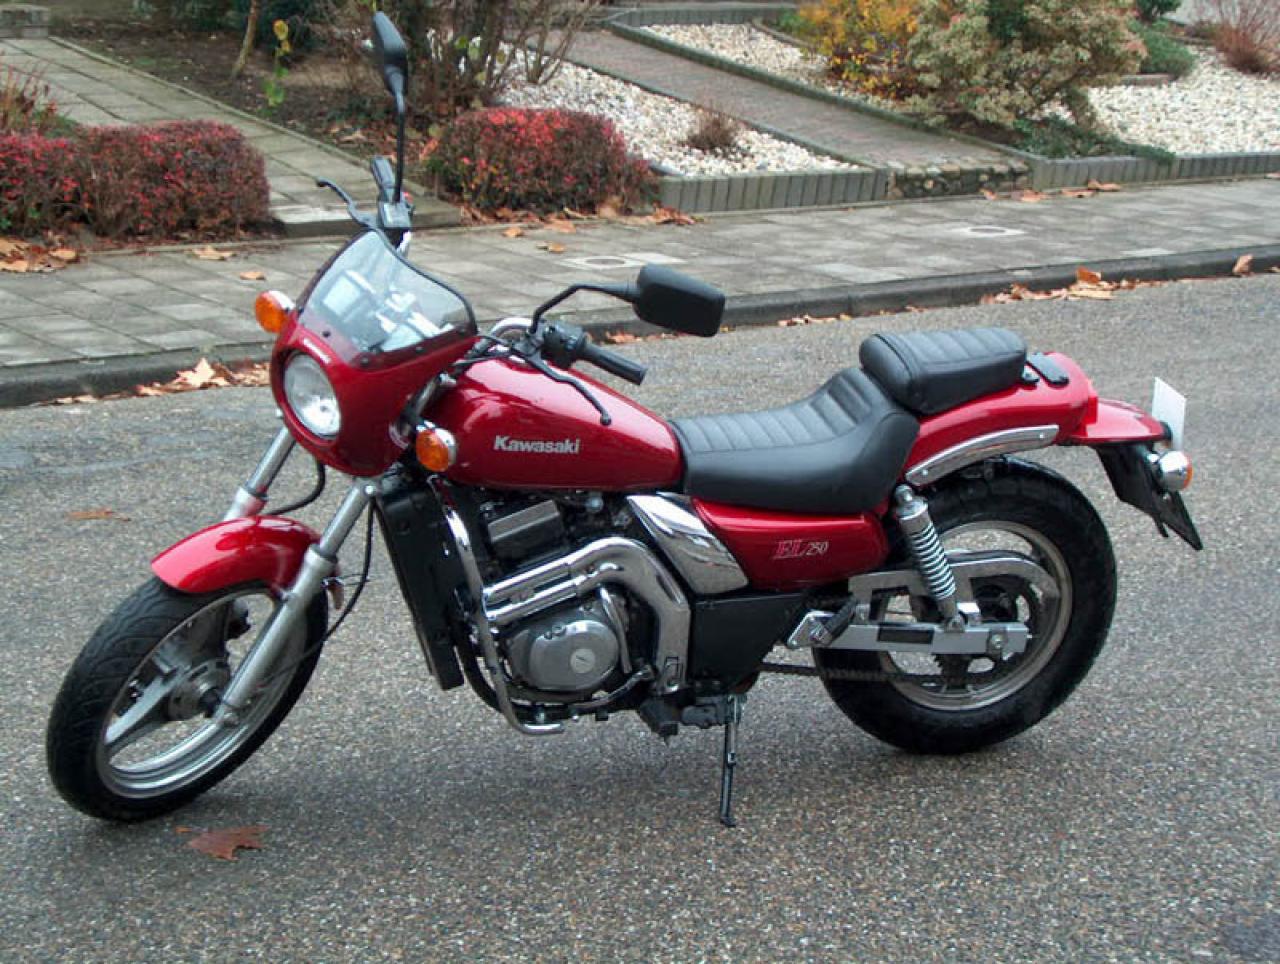 Обзор кавасаки z250 - отличный повседневный мотоцикл